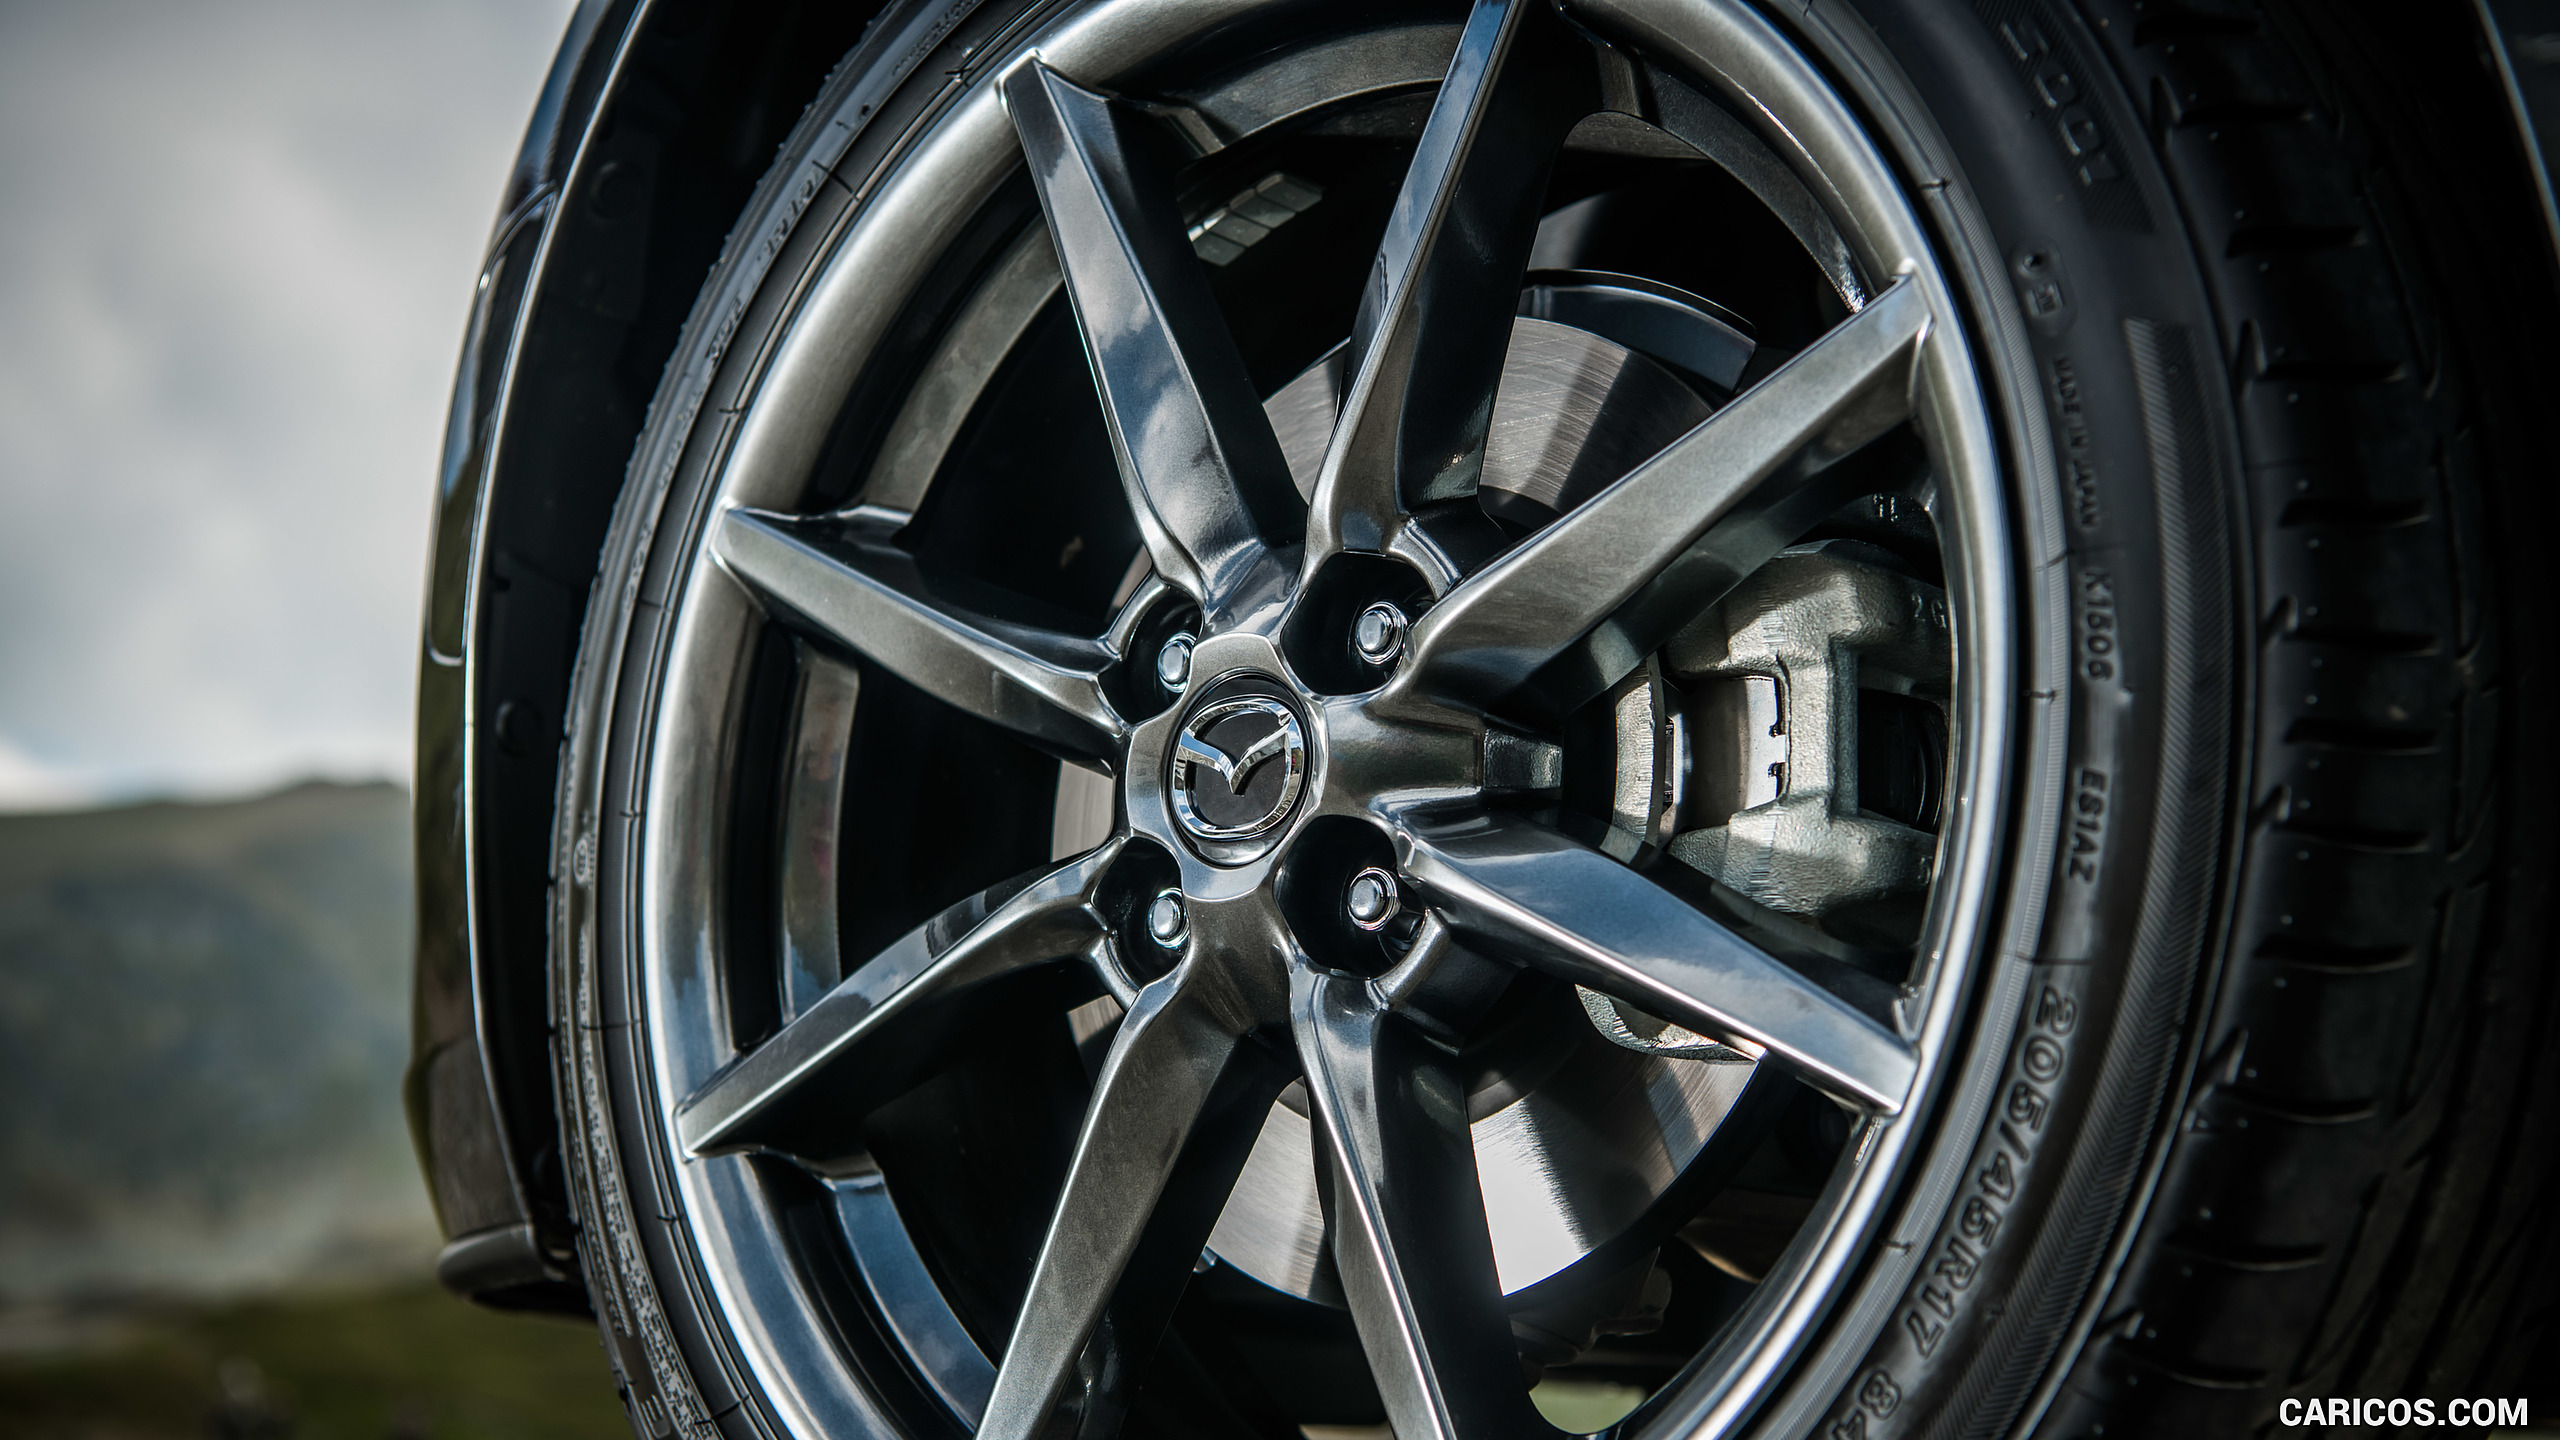 2019 Mazda MX-5 Roadster - Wheel, #54 of 101